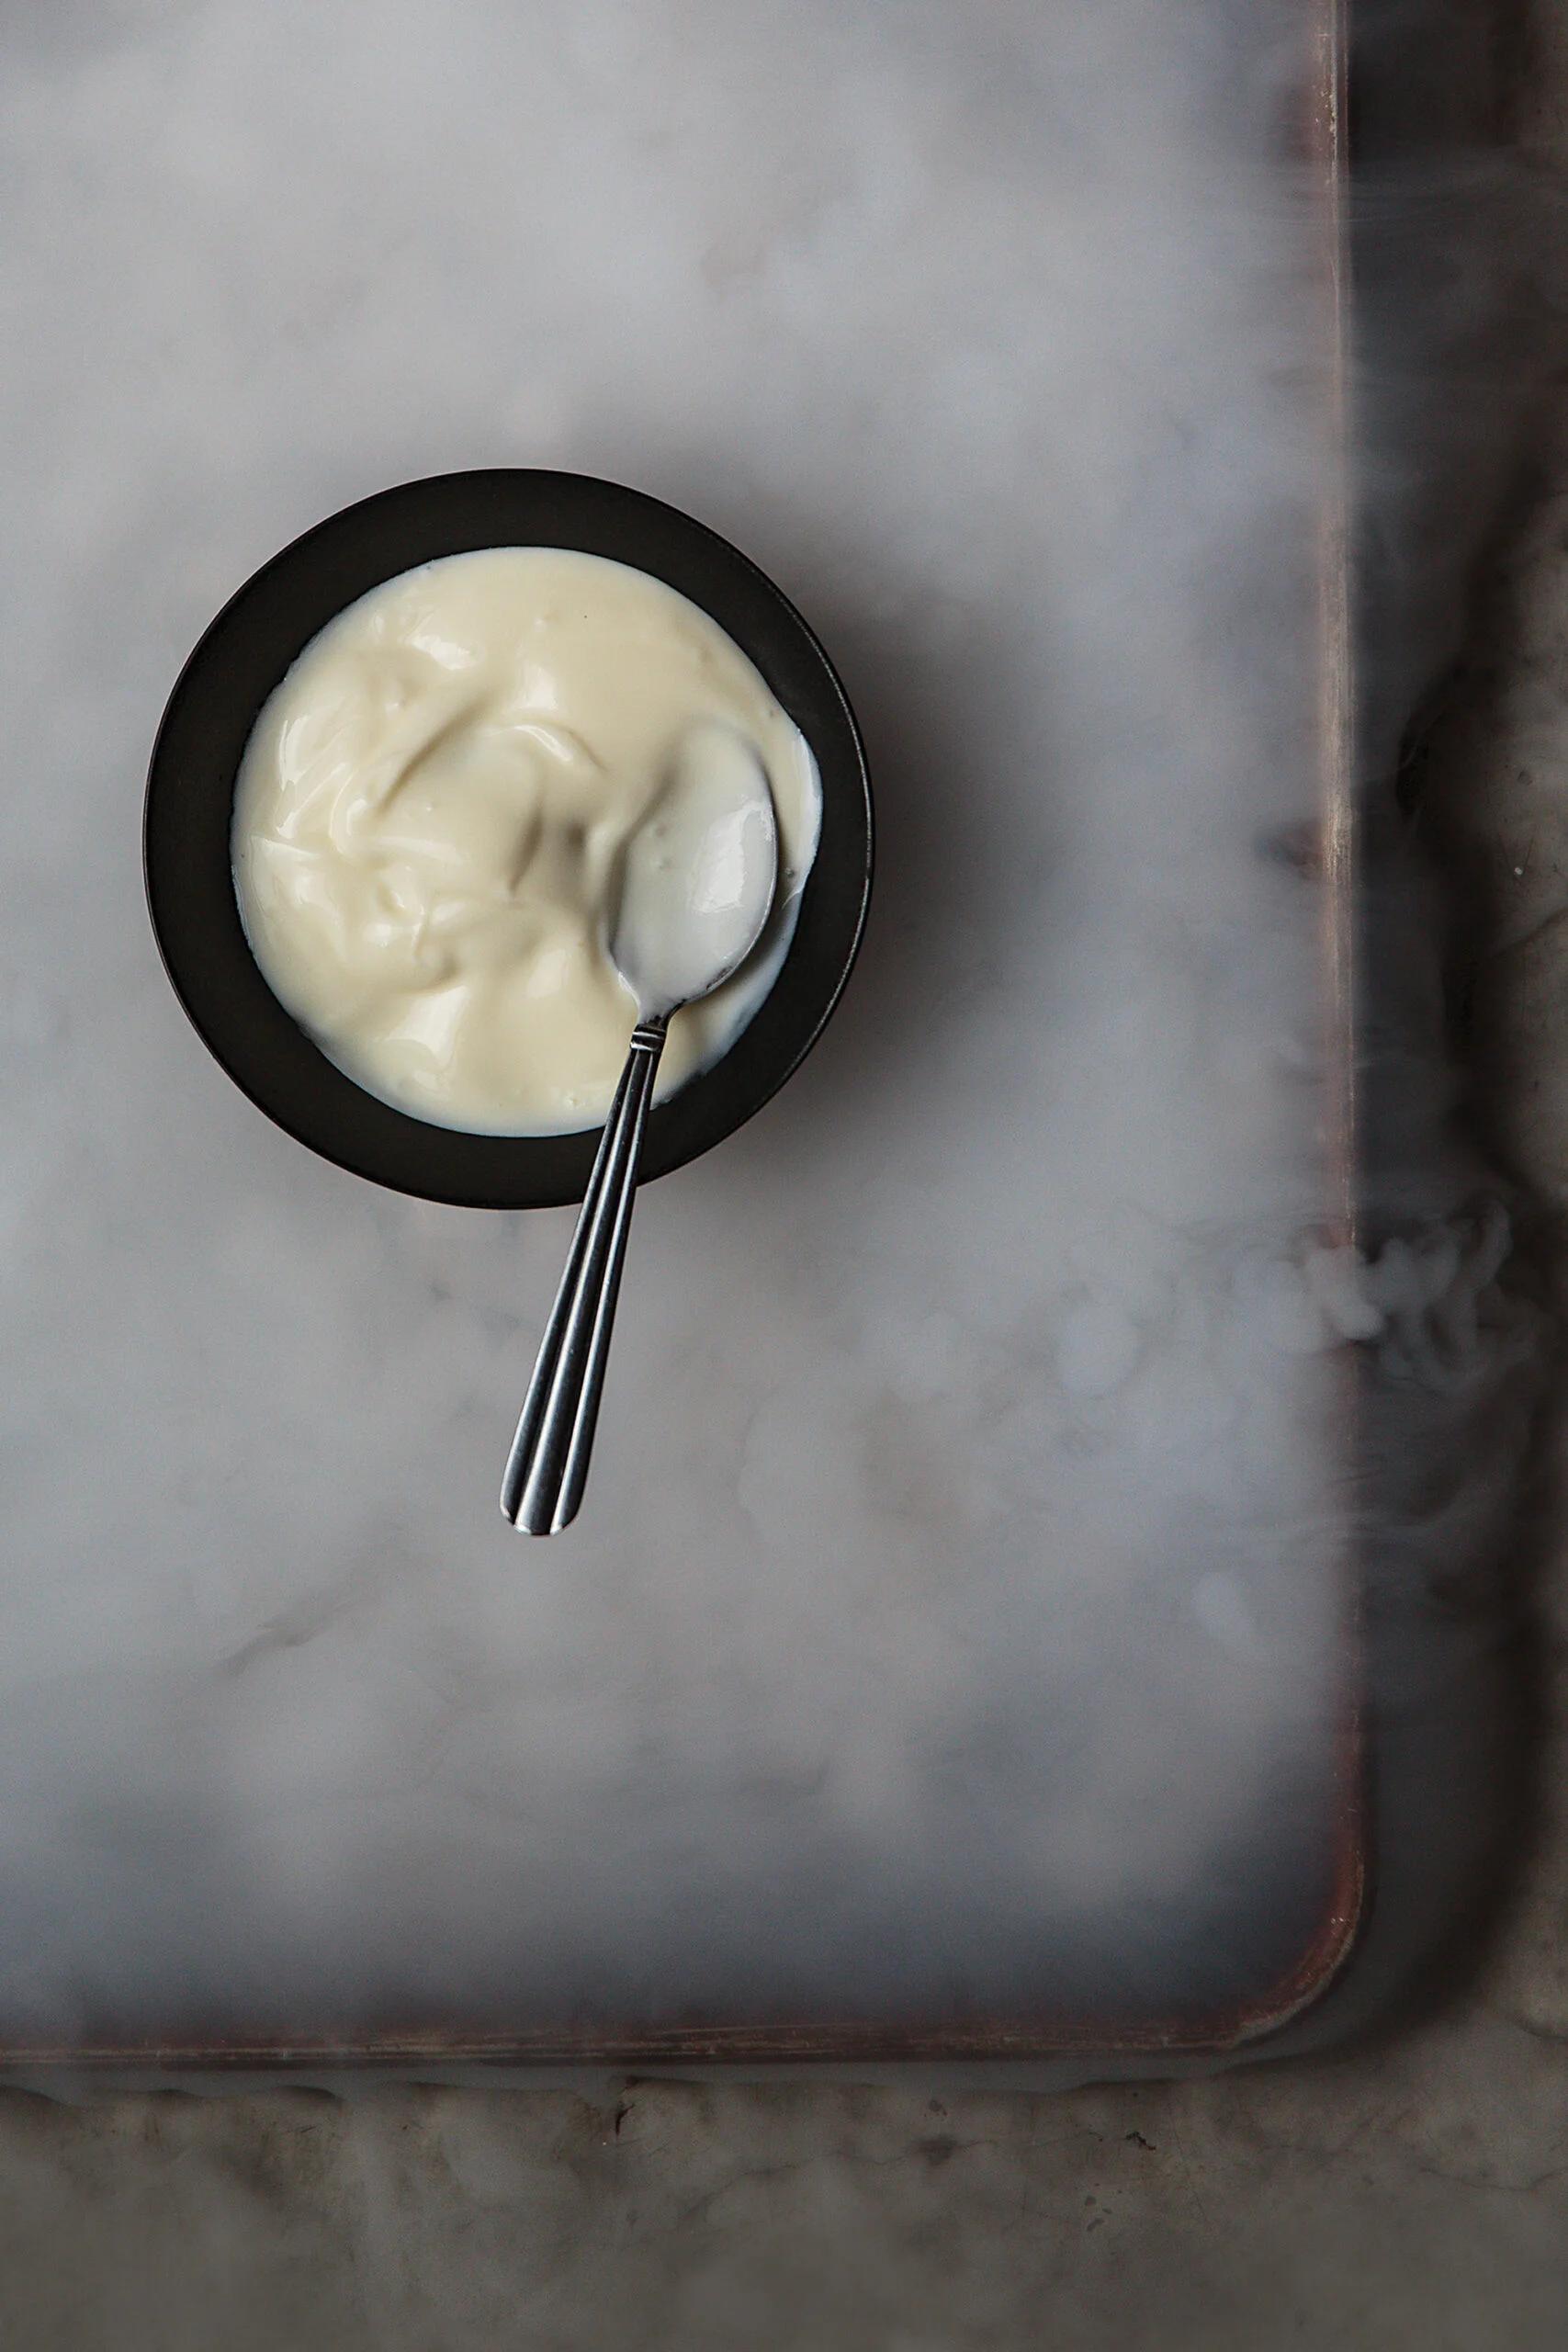 smoked yogurt sauce - What does the cornstarch do in the yogurt sauce